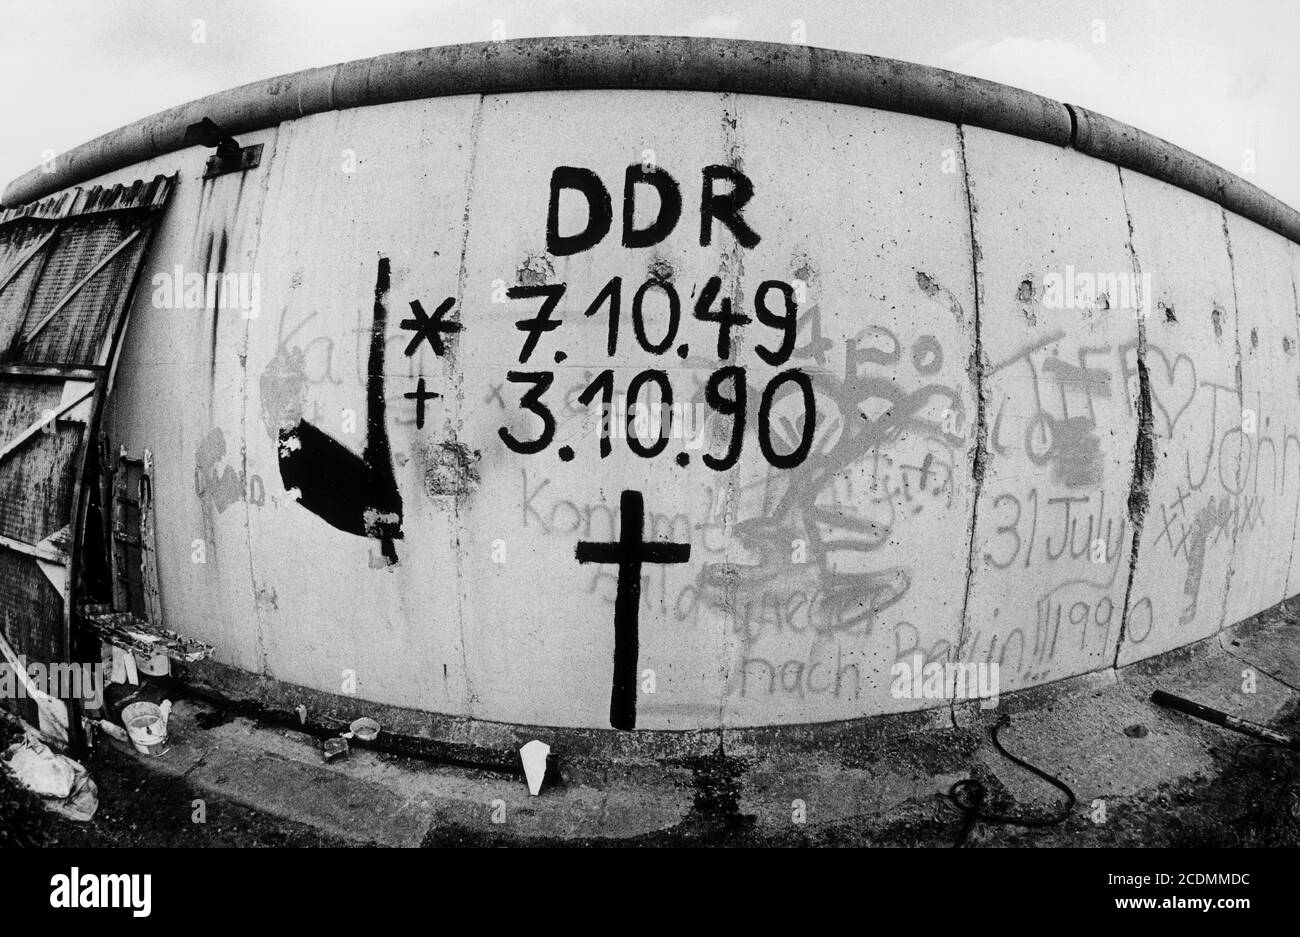 Mauer avec données DDR, Festival of Unity, Berlin, Allemagne Banque D'Images